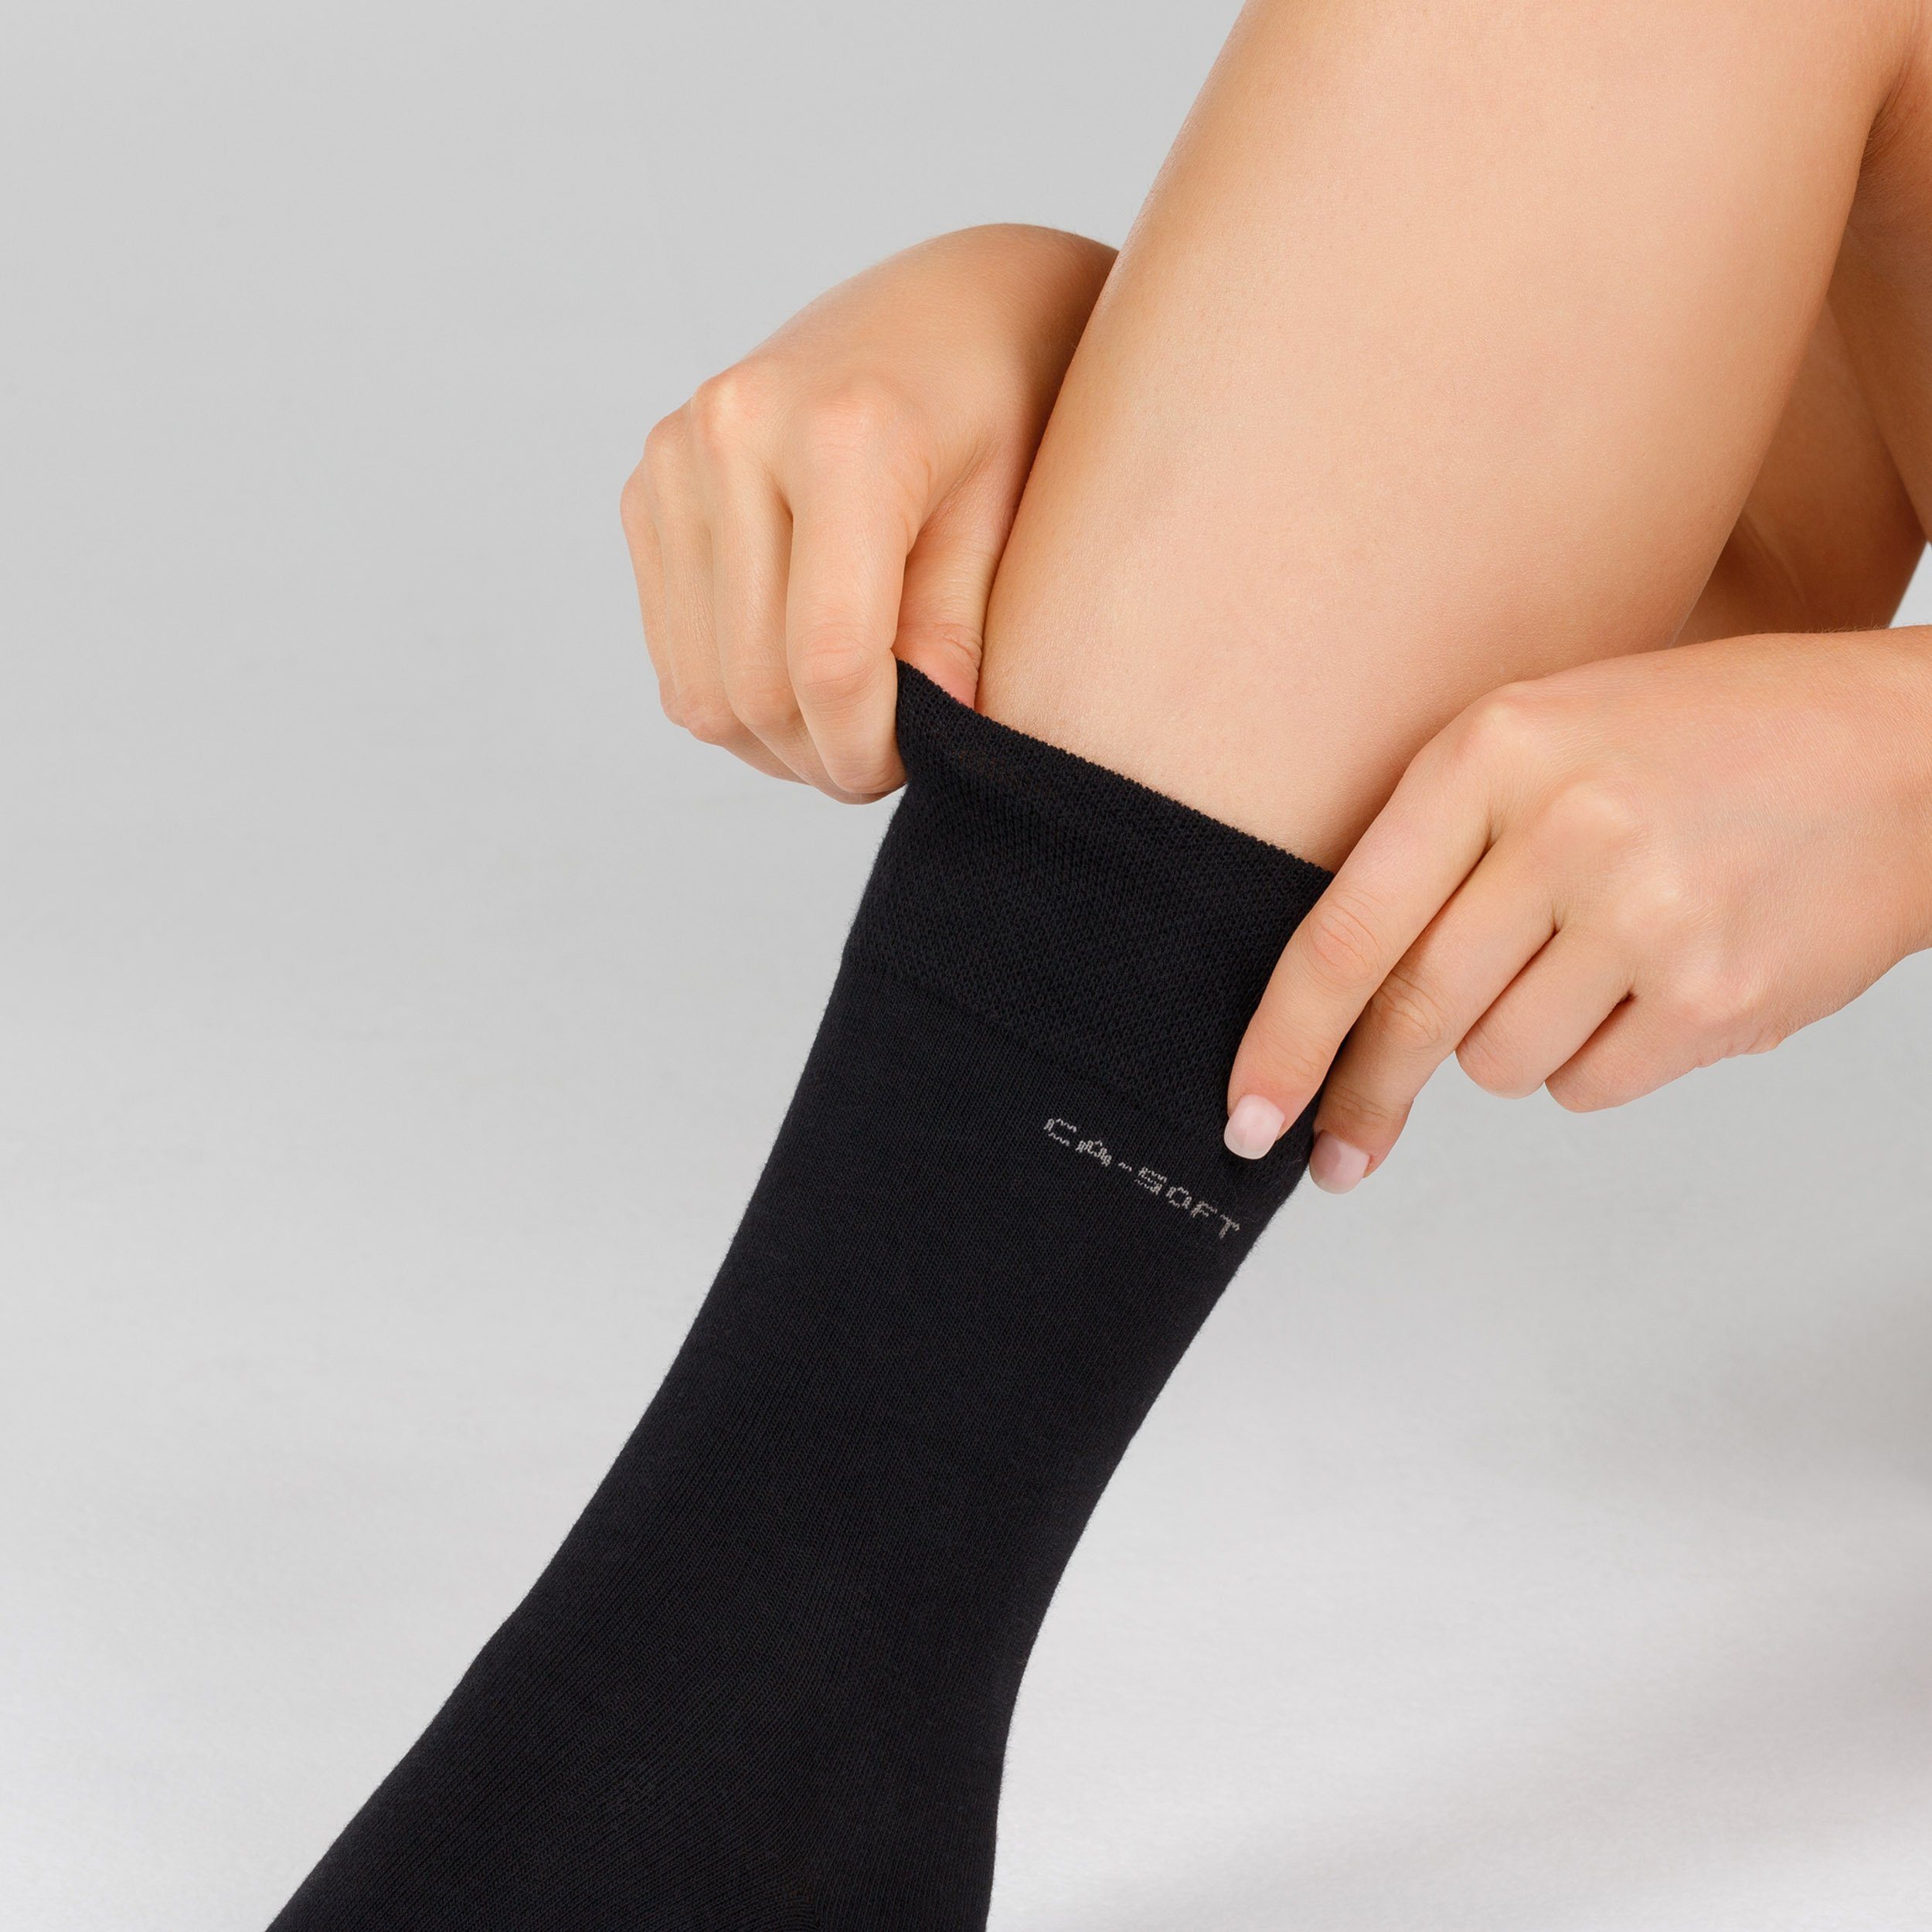 Camano Socken mit weichem Komfortbund dunkelblau blau, (7-Paar) ca-soft